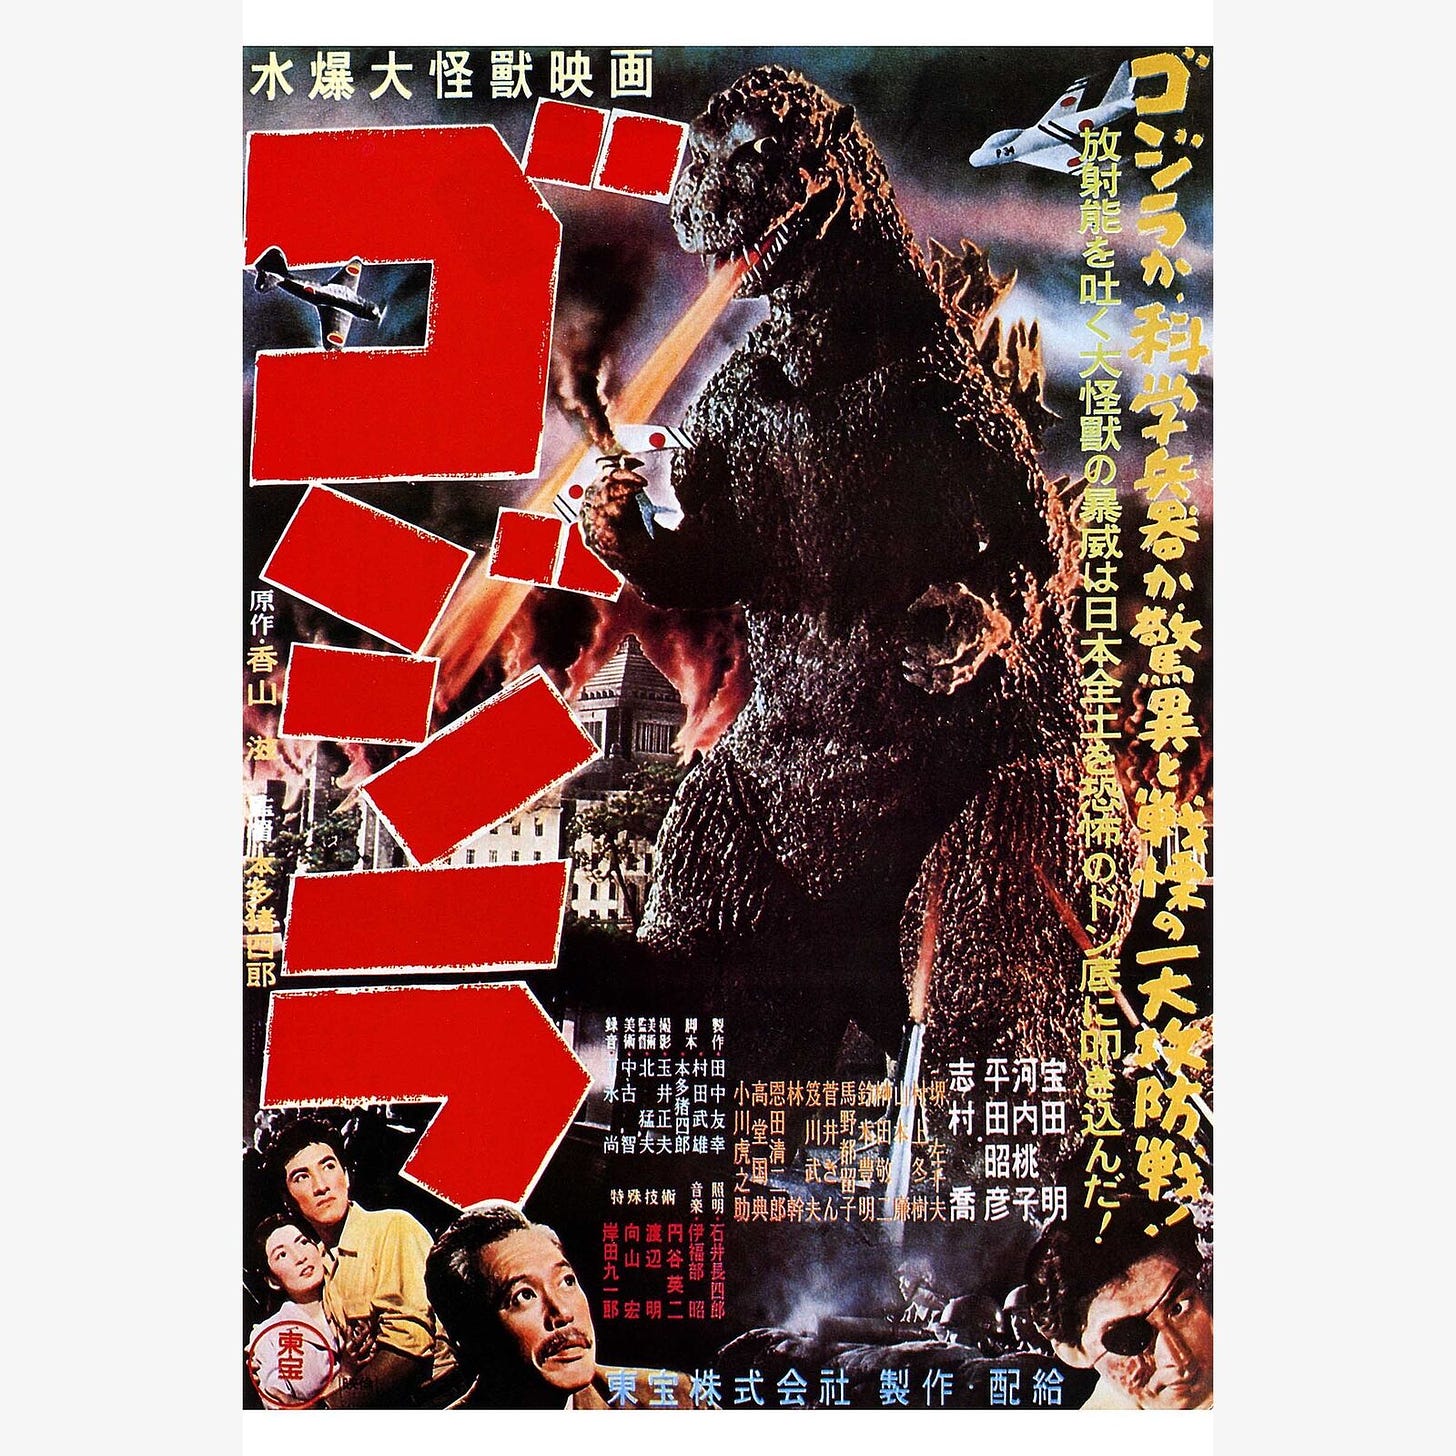 Gojira Godzilla 1954 Japanese Movie Poster | eBay